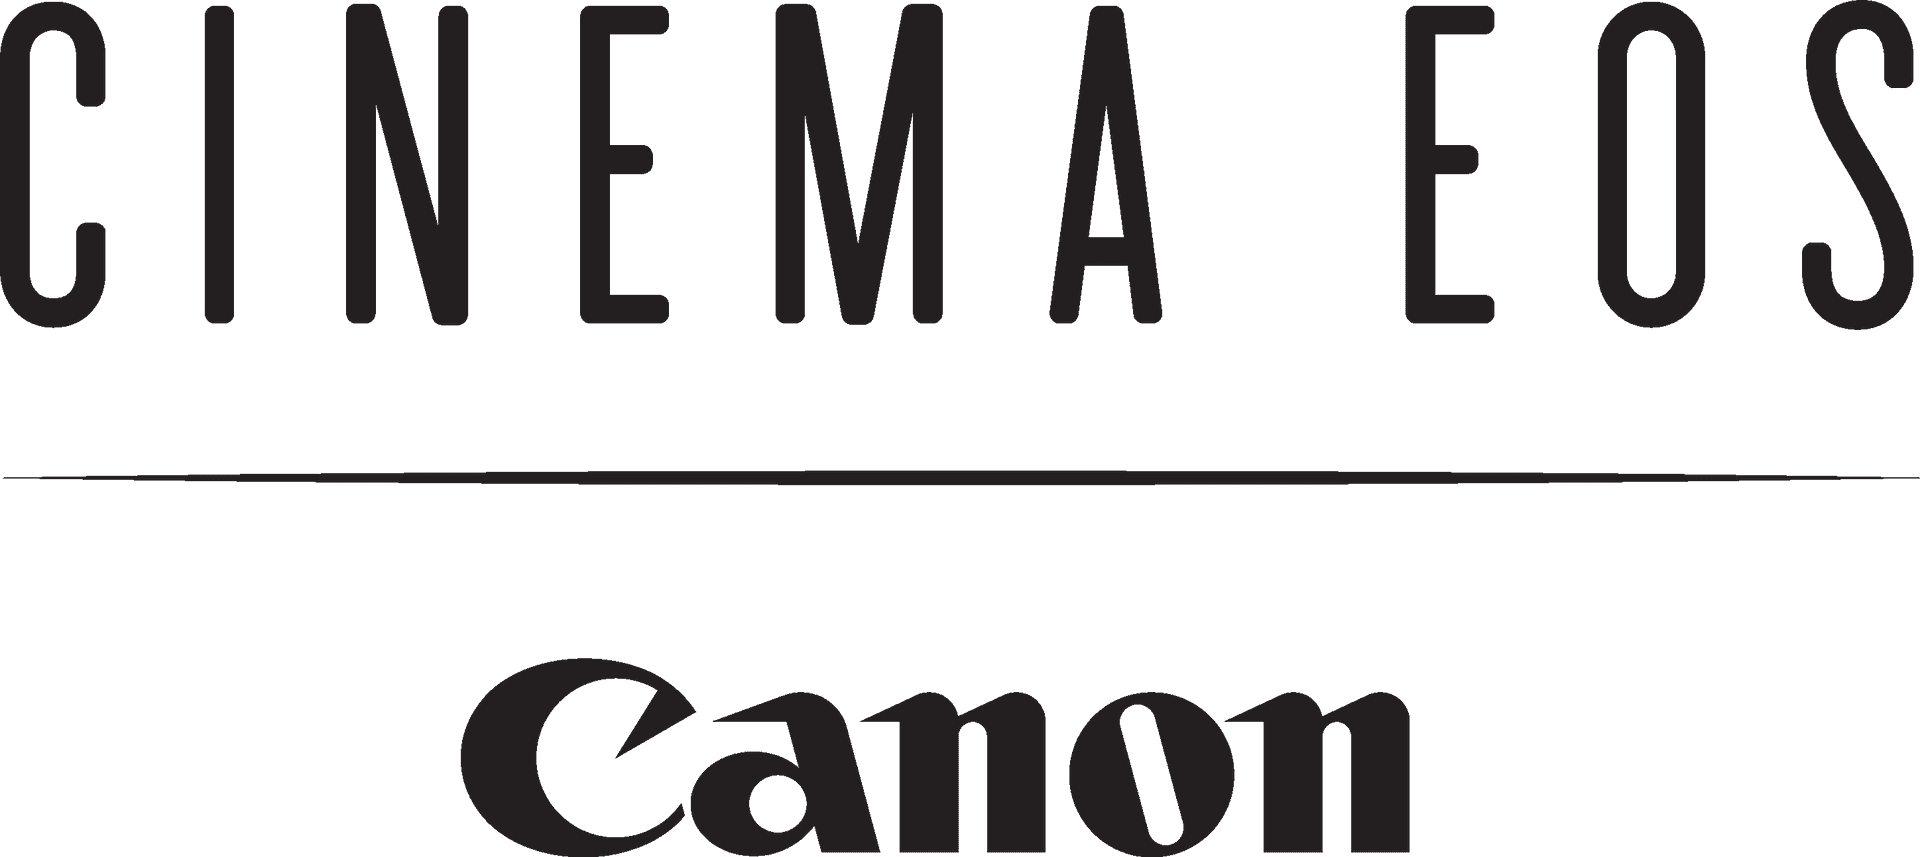 Canon Cinema E O S Logo PNG